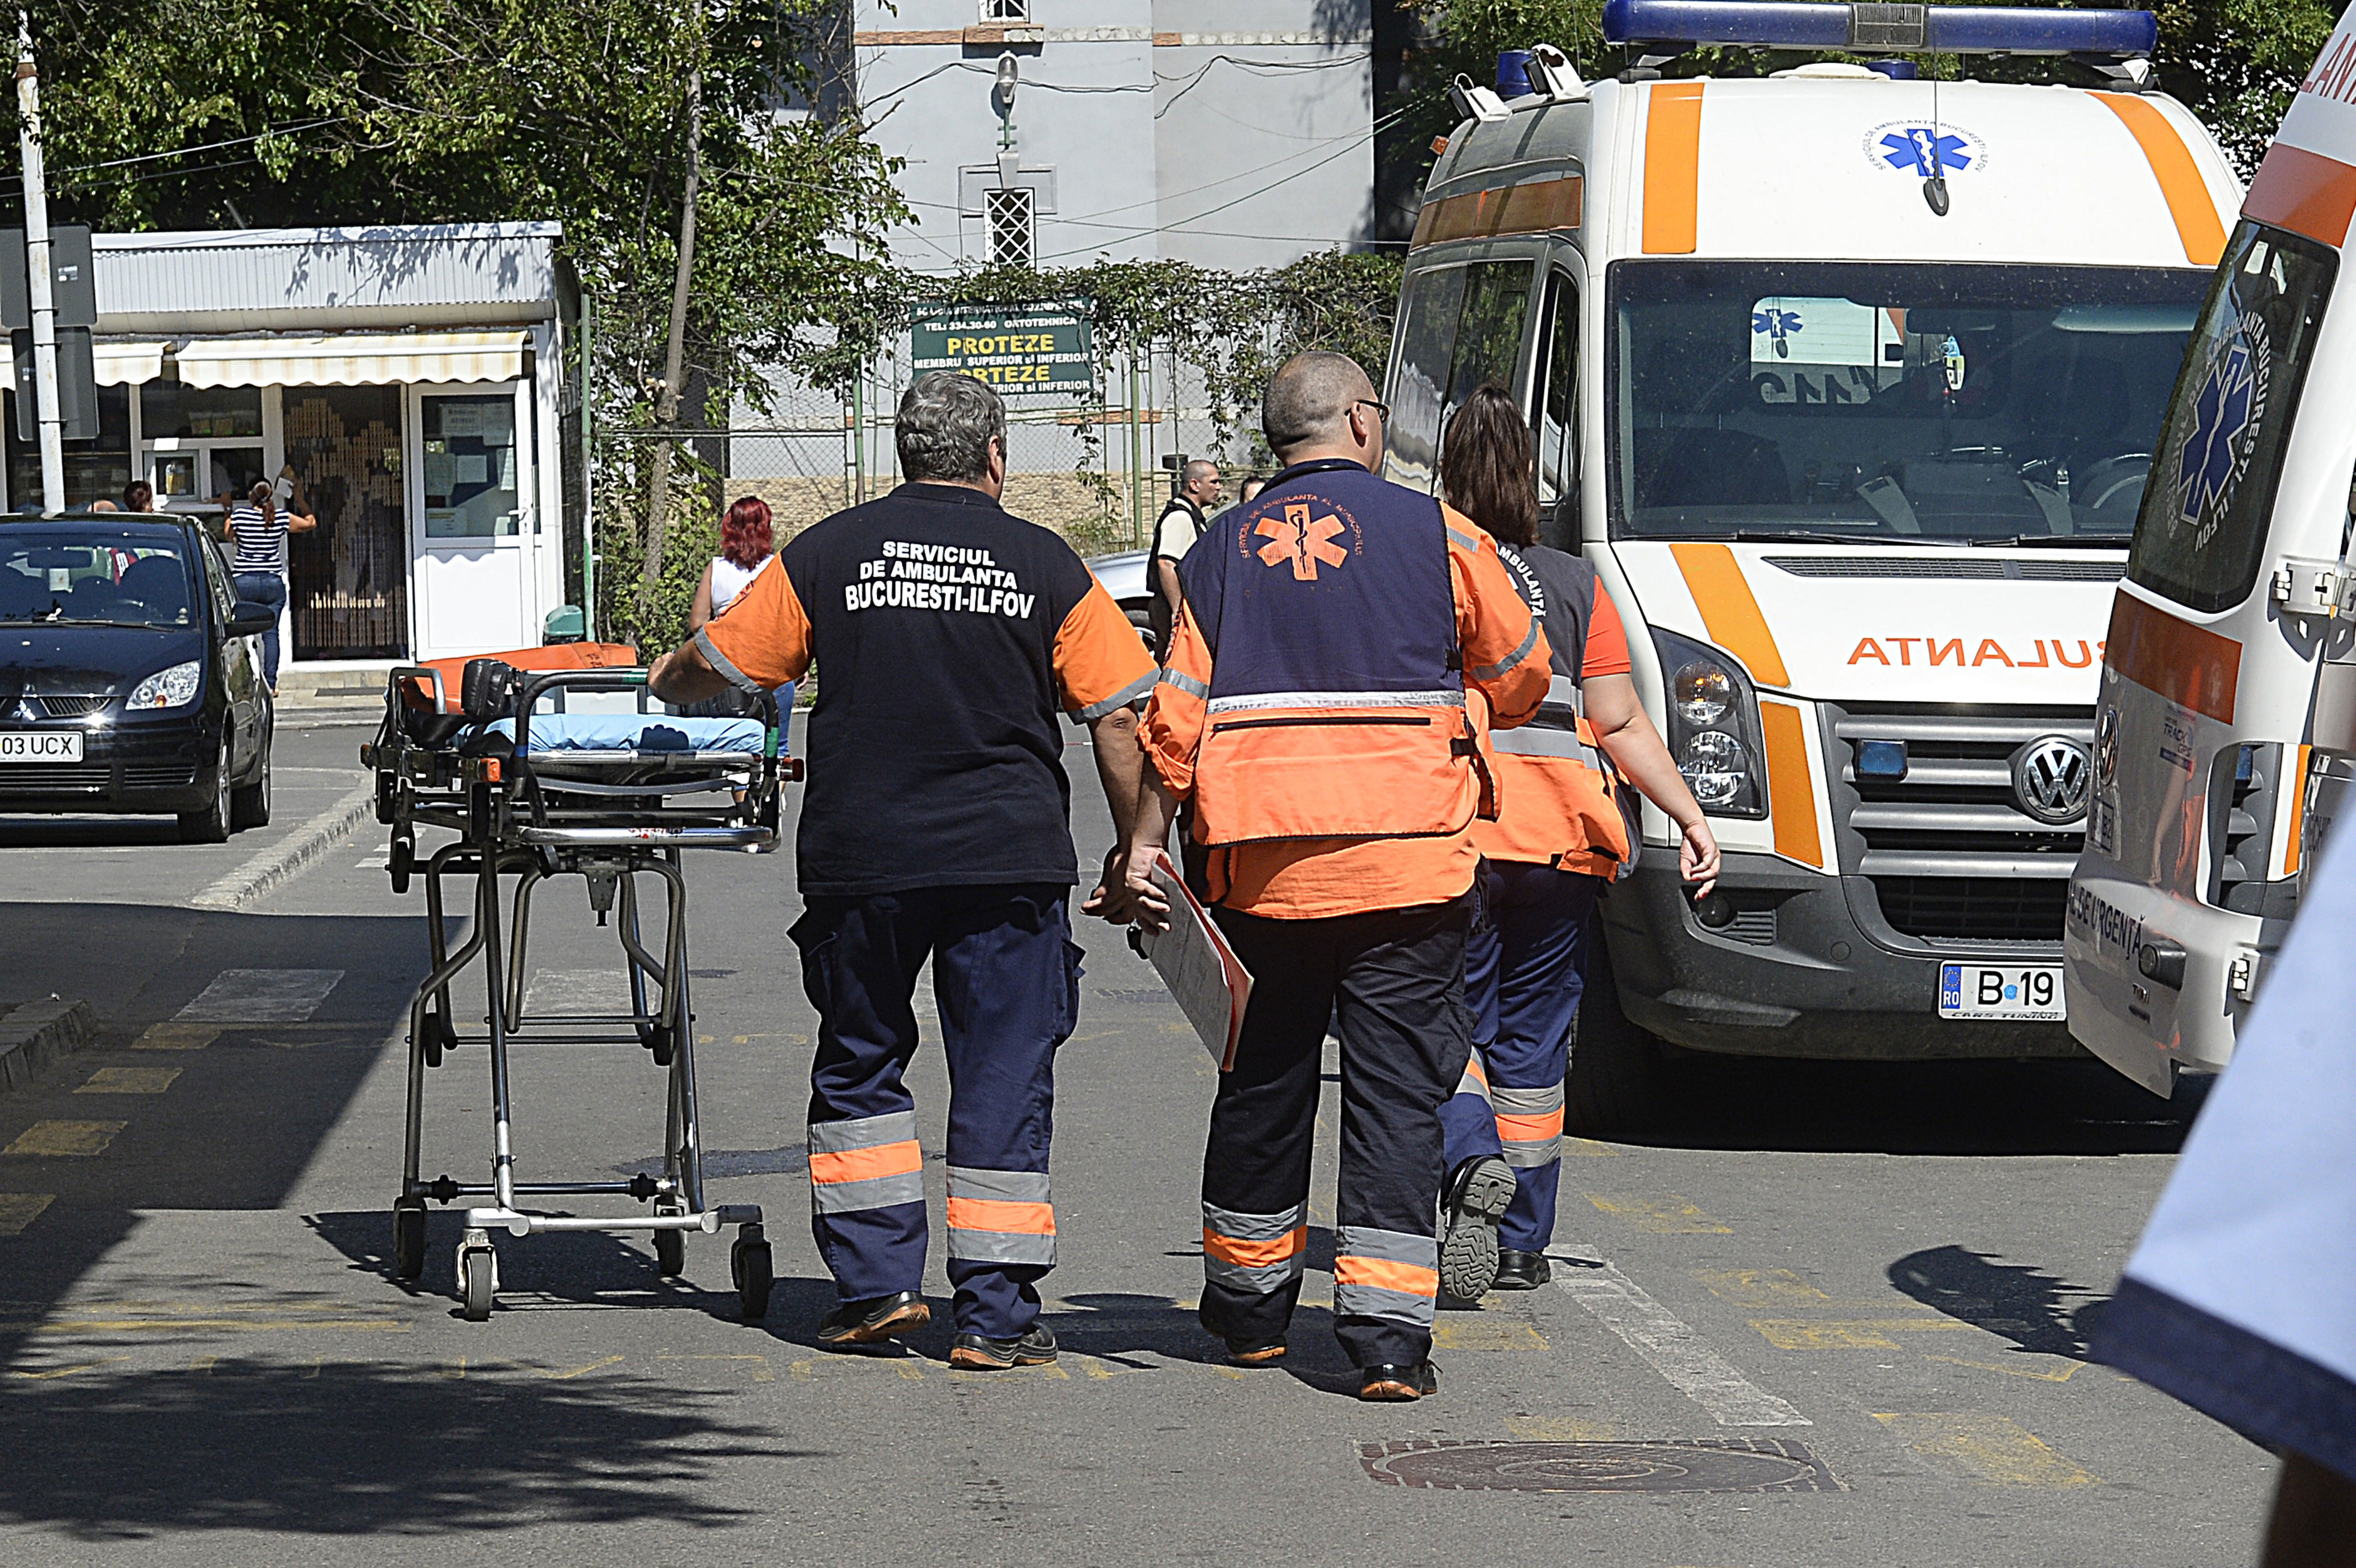 Imaginea cu un ambulanţier care a cărat în spate o pacientă pentru a o salva a devenit virală